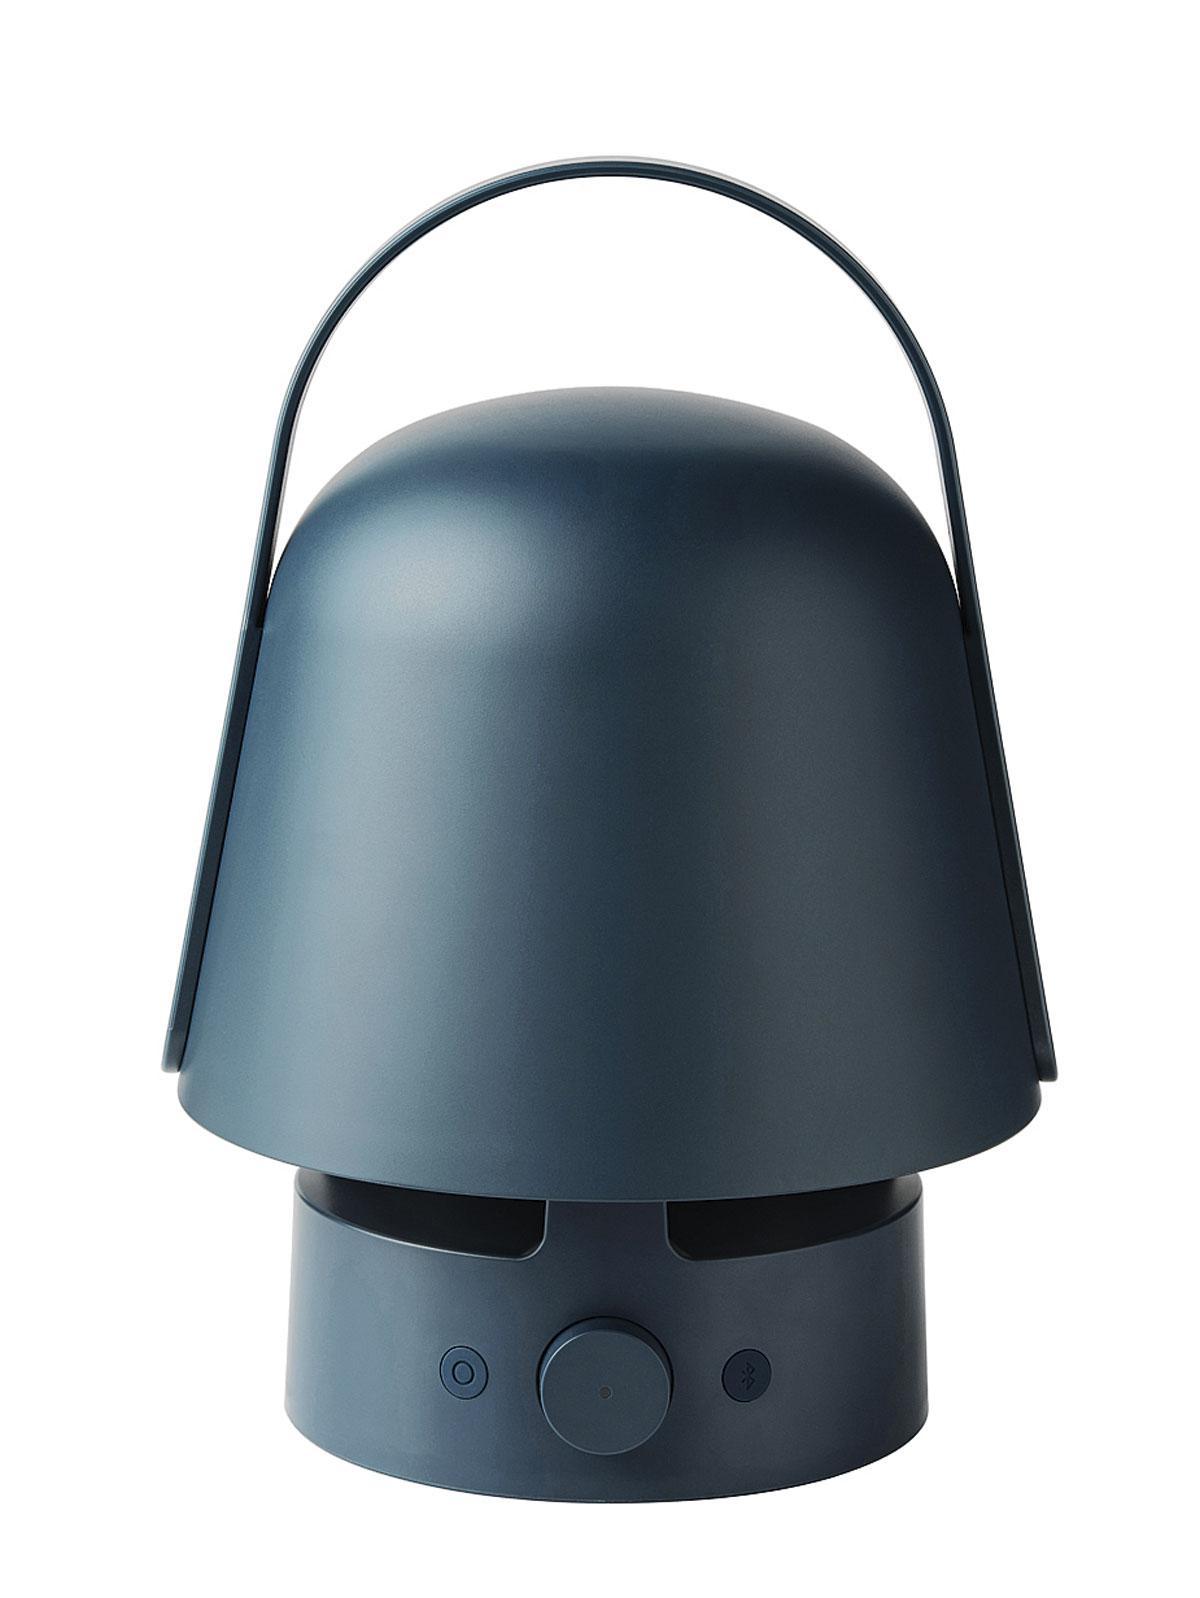 Vappeby, speaker Bluetooth d’extérieur avec lumière d’ambiance (49,99 euros), Ikea. 